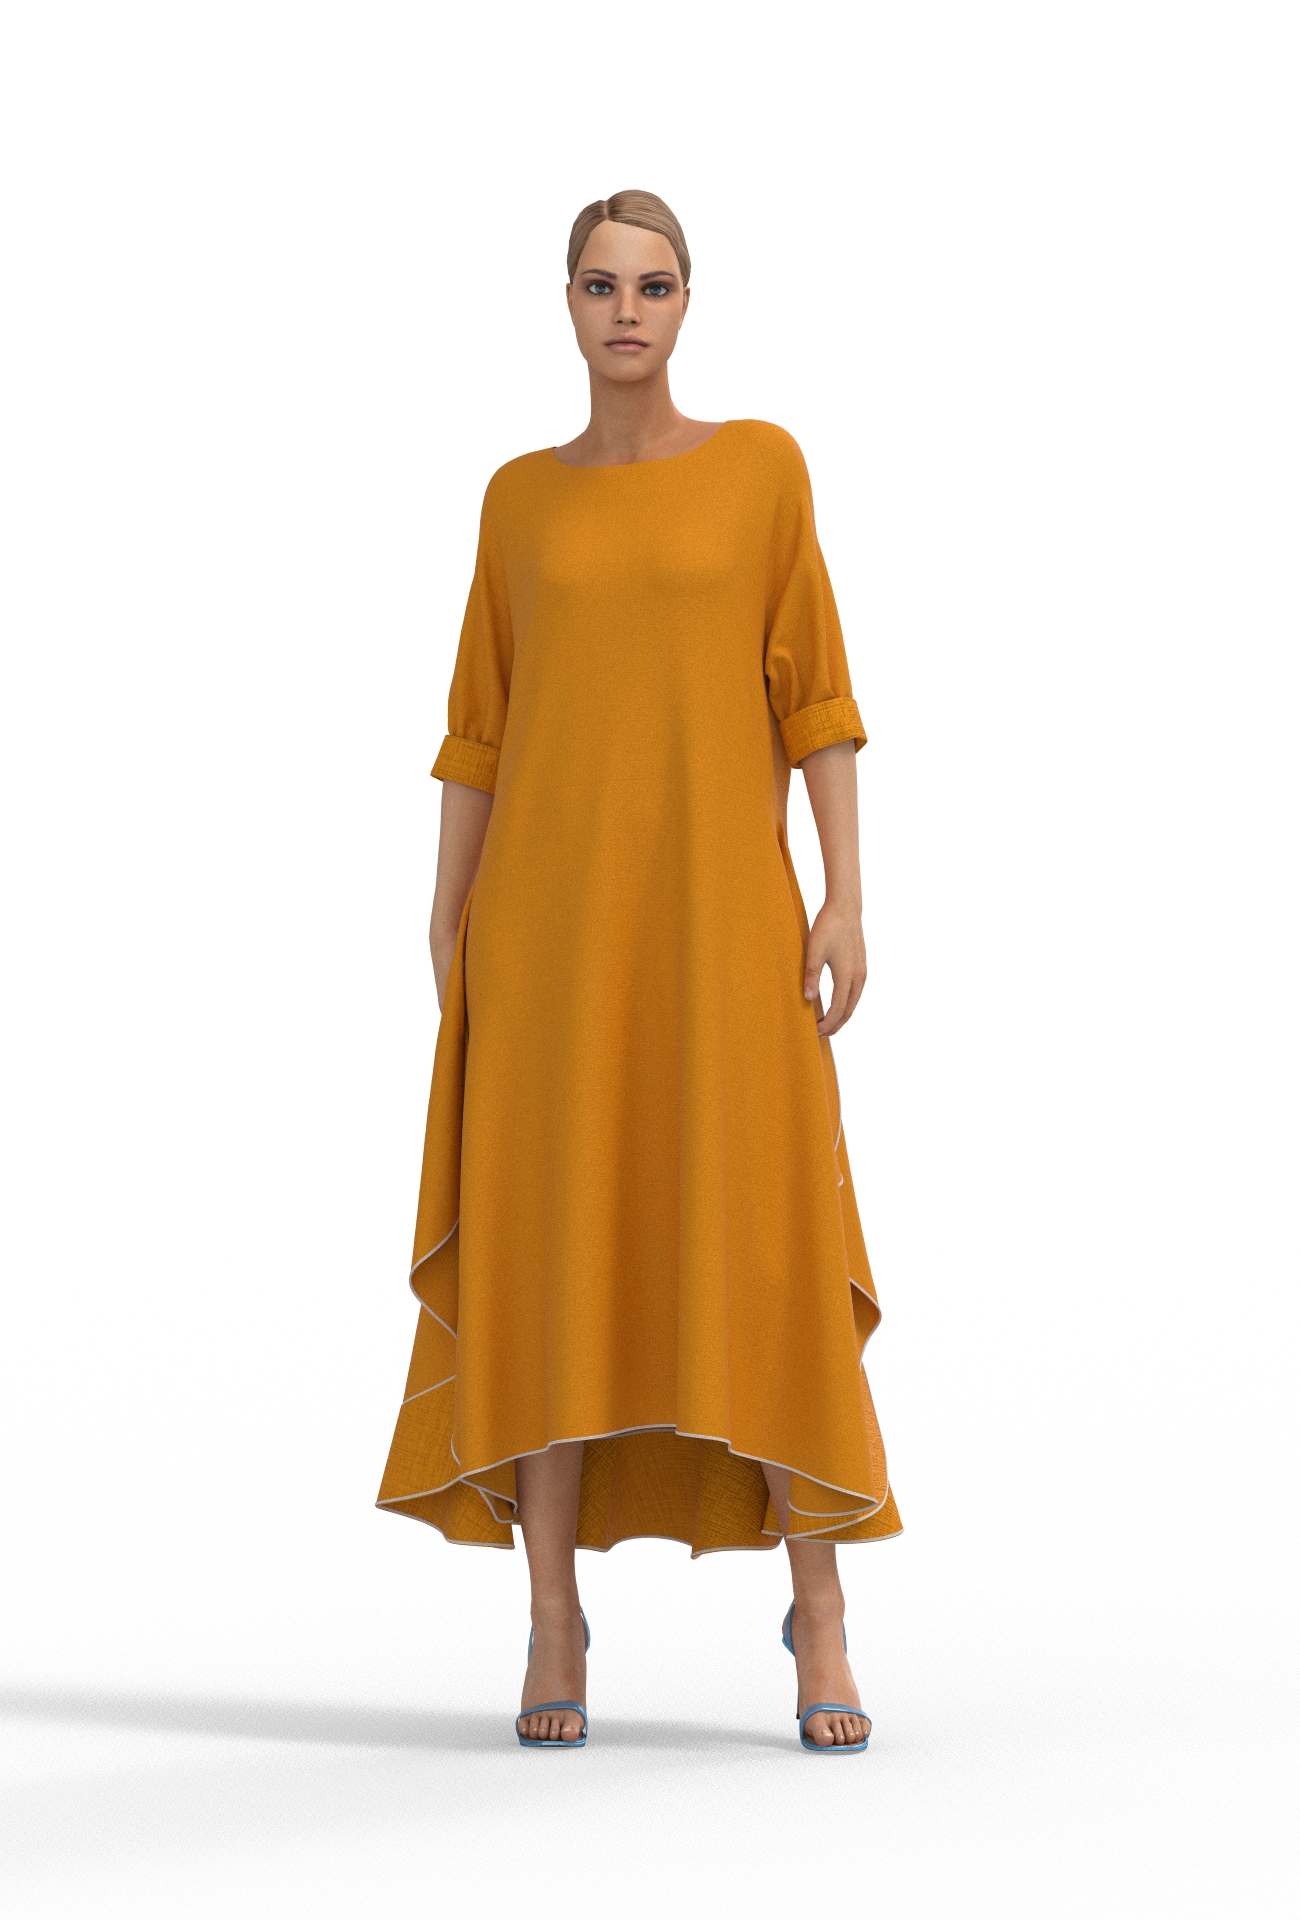 Алина. Платье женское льняное ассиметричное PL-42-5382